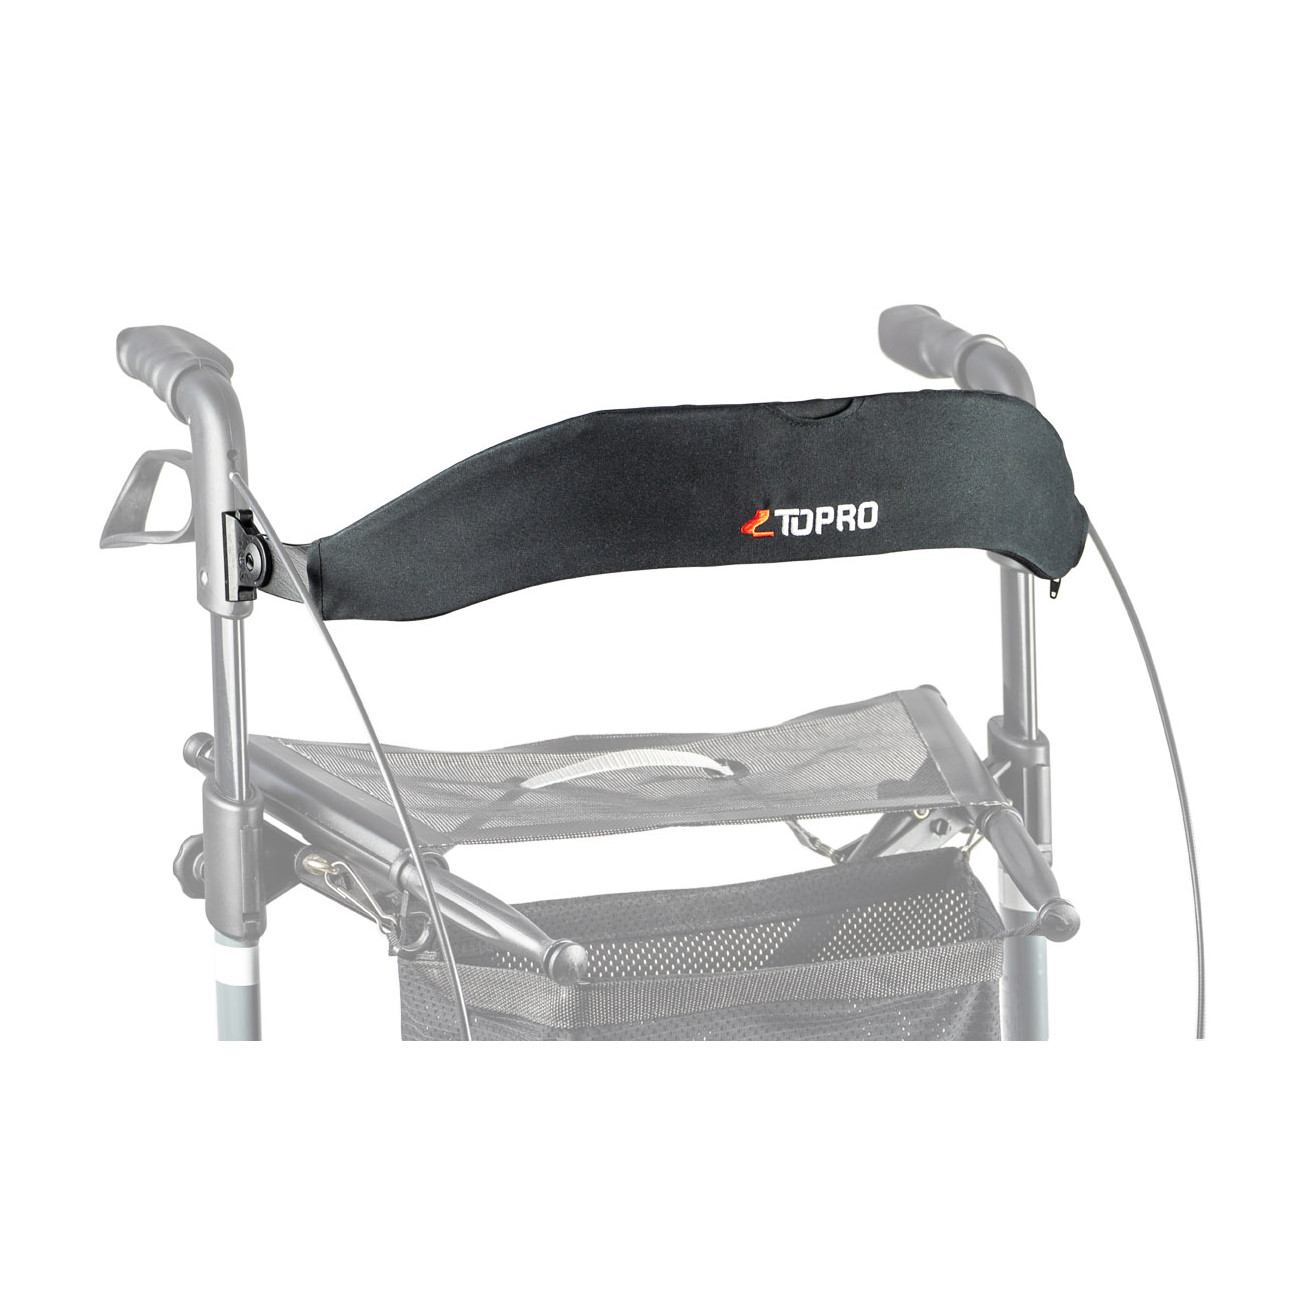 Topro Olympos ATR | Outdoor-Rollator | mit stoßabsorbierenden Rädern & Topro Ergo Grip Schiebegriff